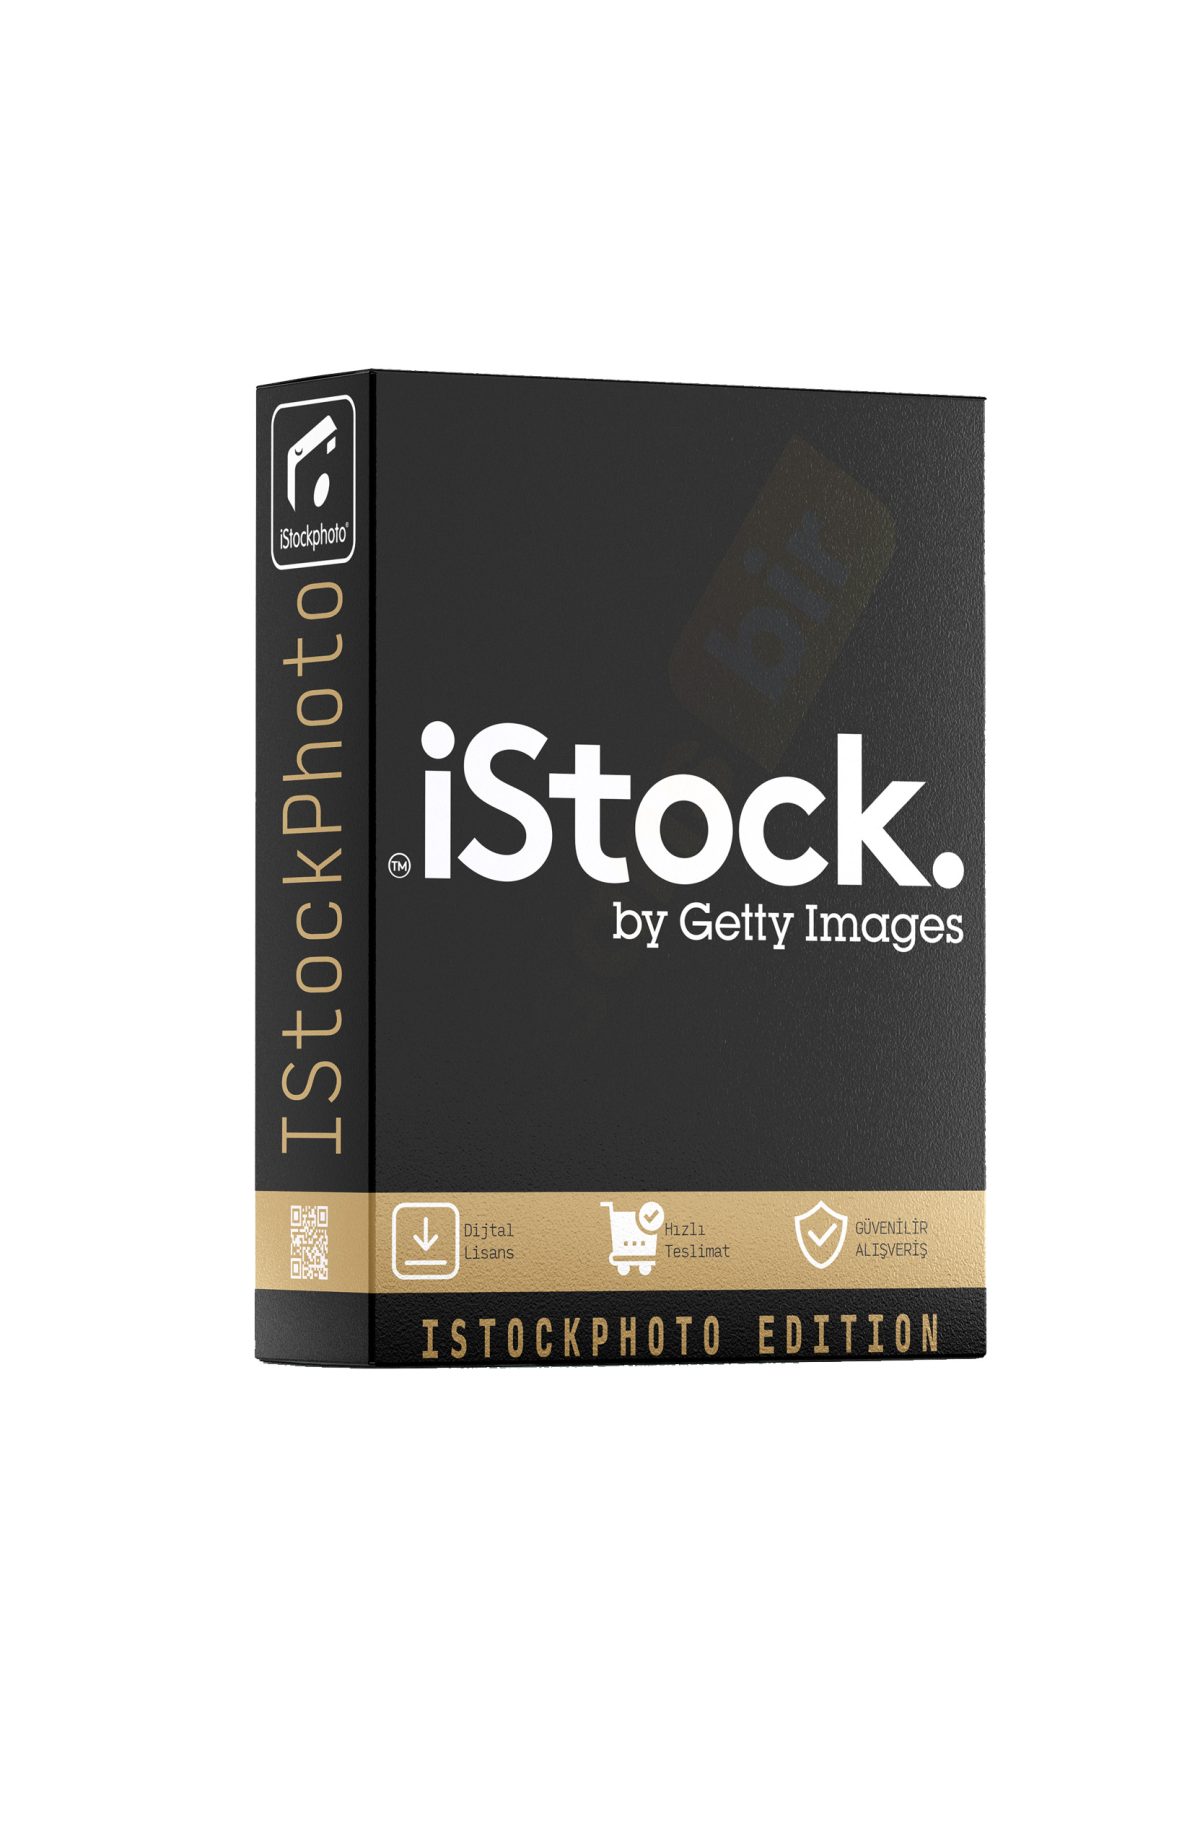 iStockPhoto özellikleri ve çekici yönleri hakkında daha fazla bilgi için Lisansbir ürün sayfasını ziyaret edebilirsiniz.